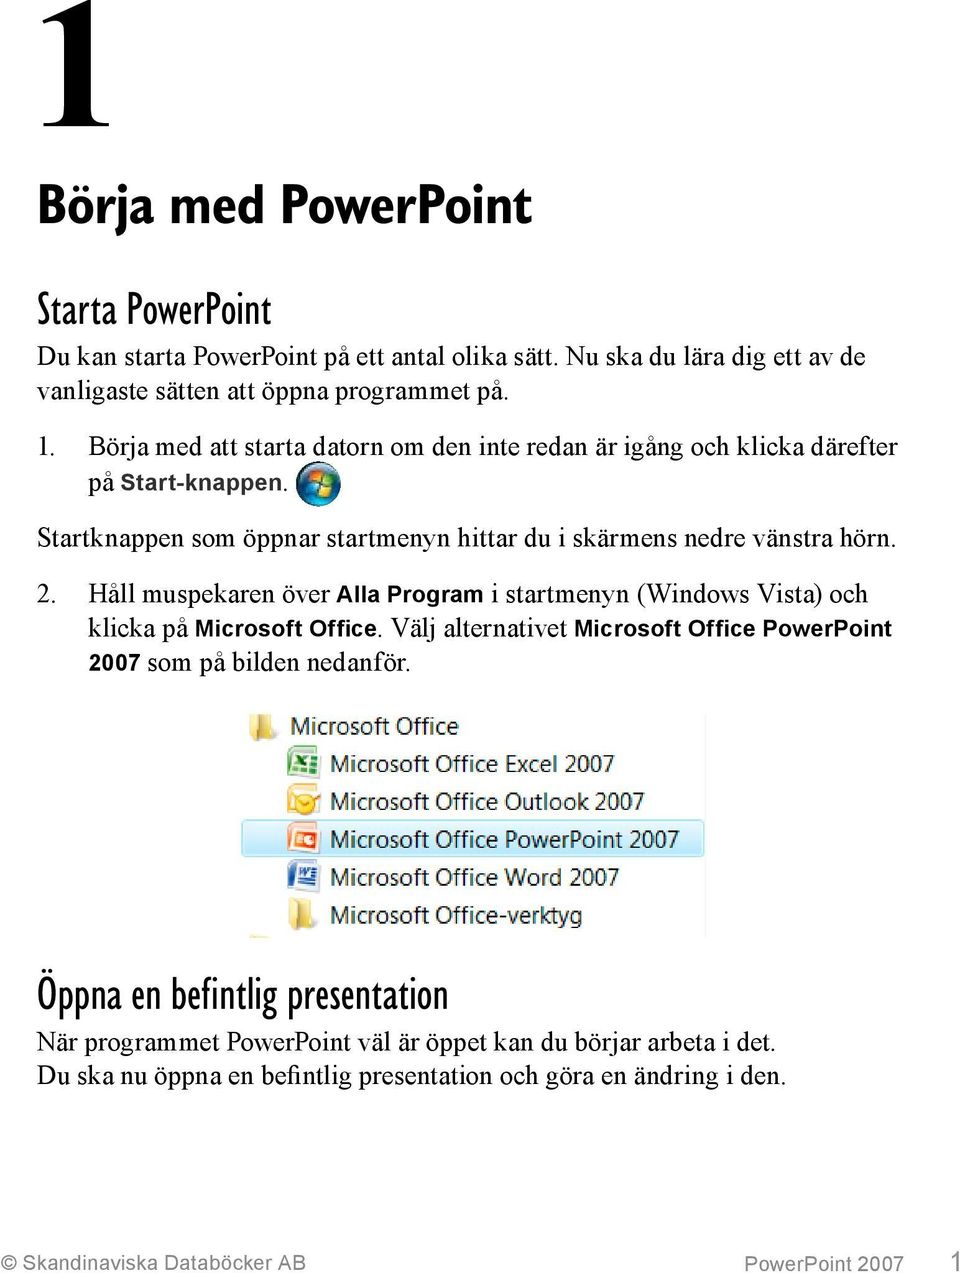 Håll muspekaren över Alla Program i startmenyn (Windows Vista) och klicka på Microsoft Office. Välj alternativet Microsoft Office PowerPoint 2007 som på bilden nedanför.